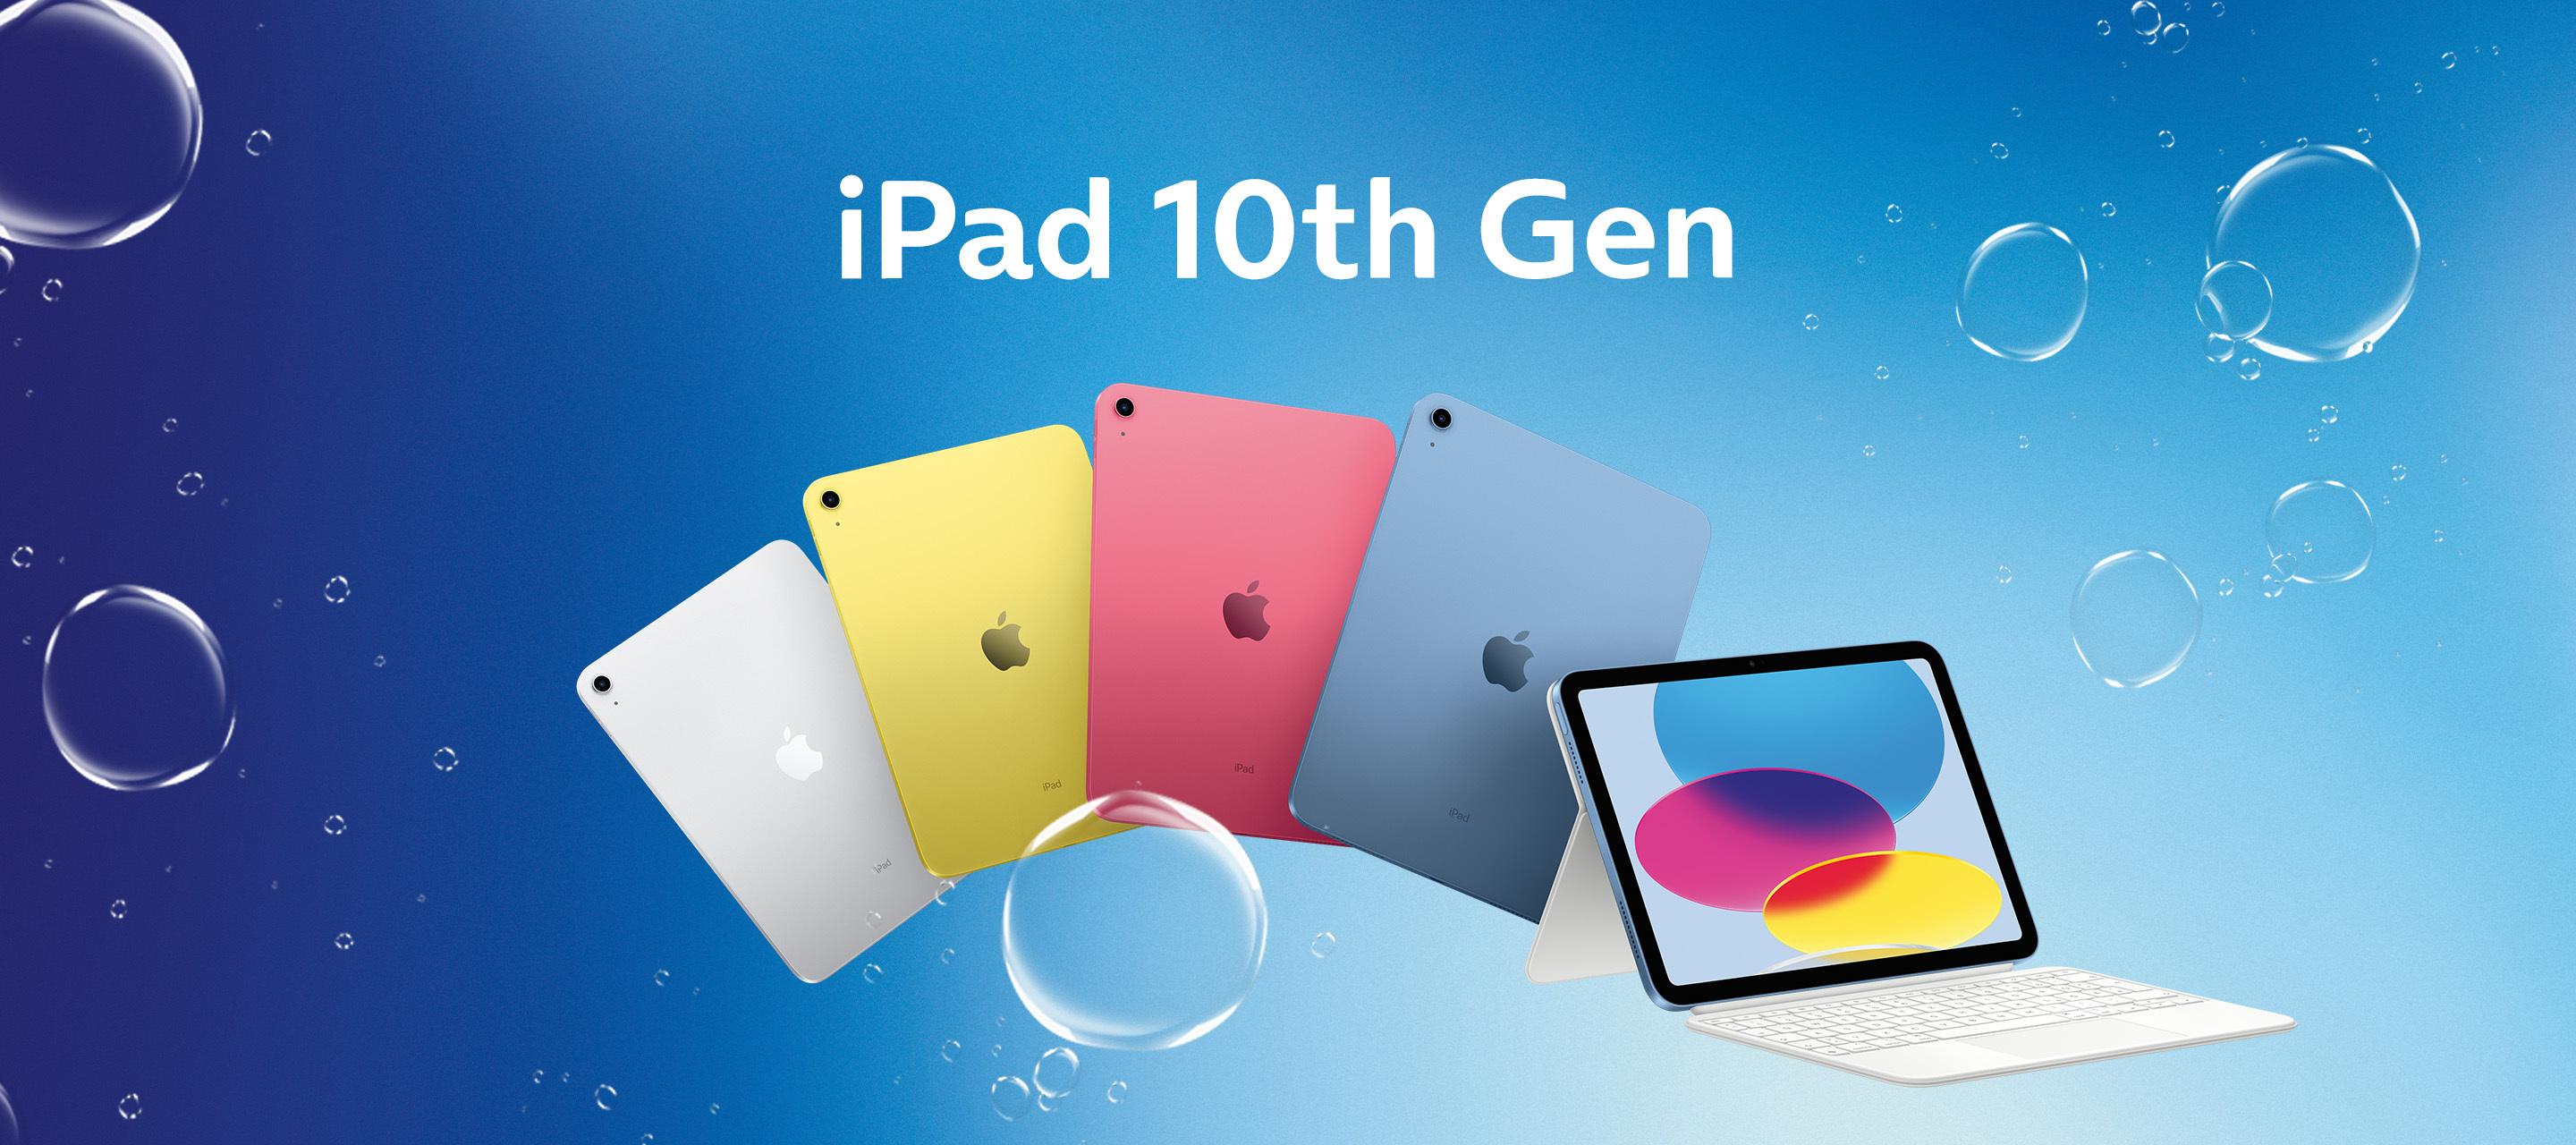 Die iPads der 10. Generation sind da